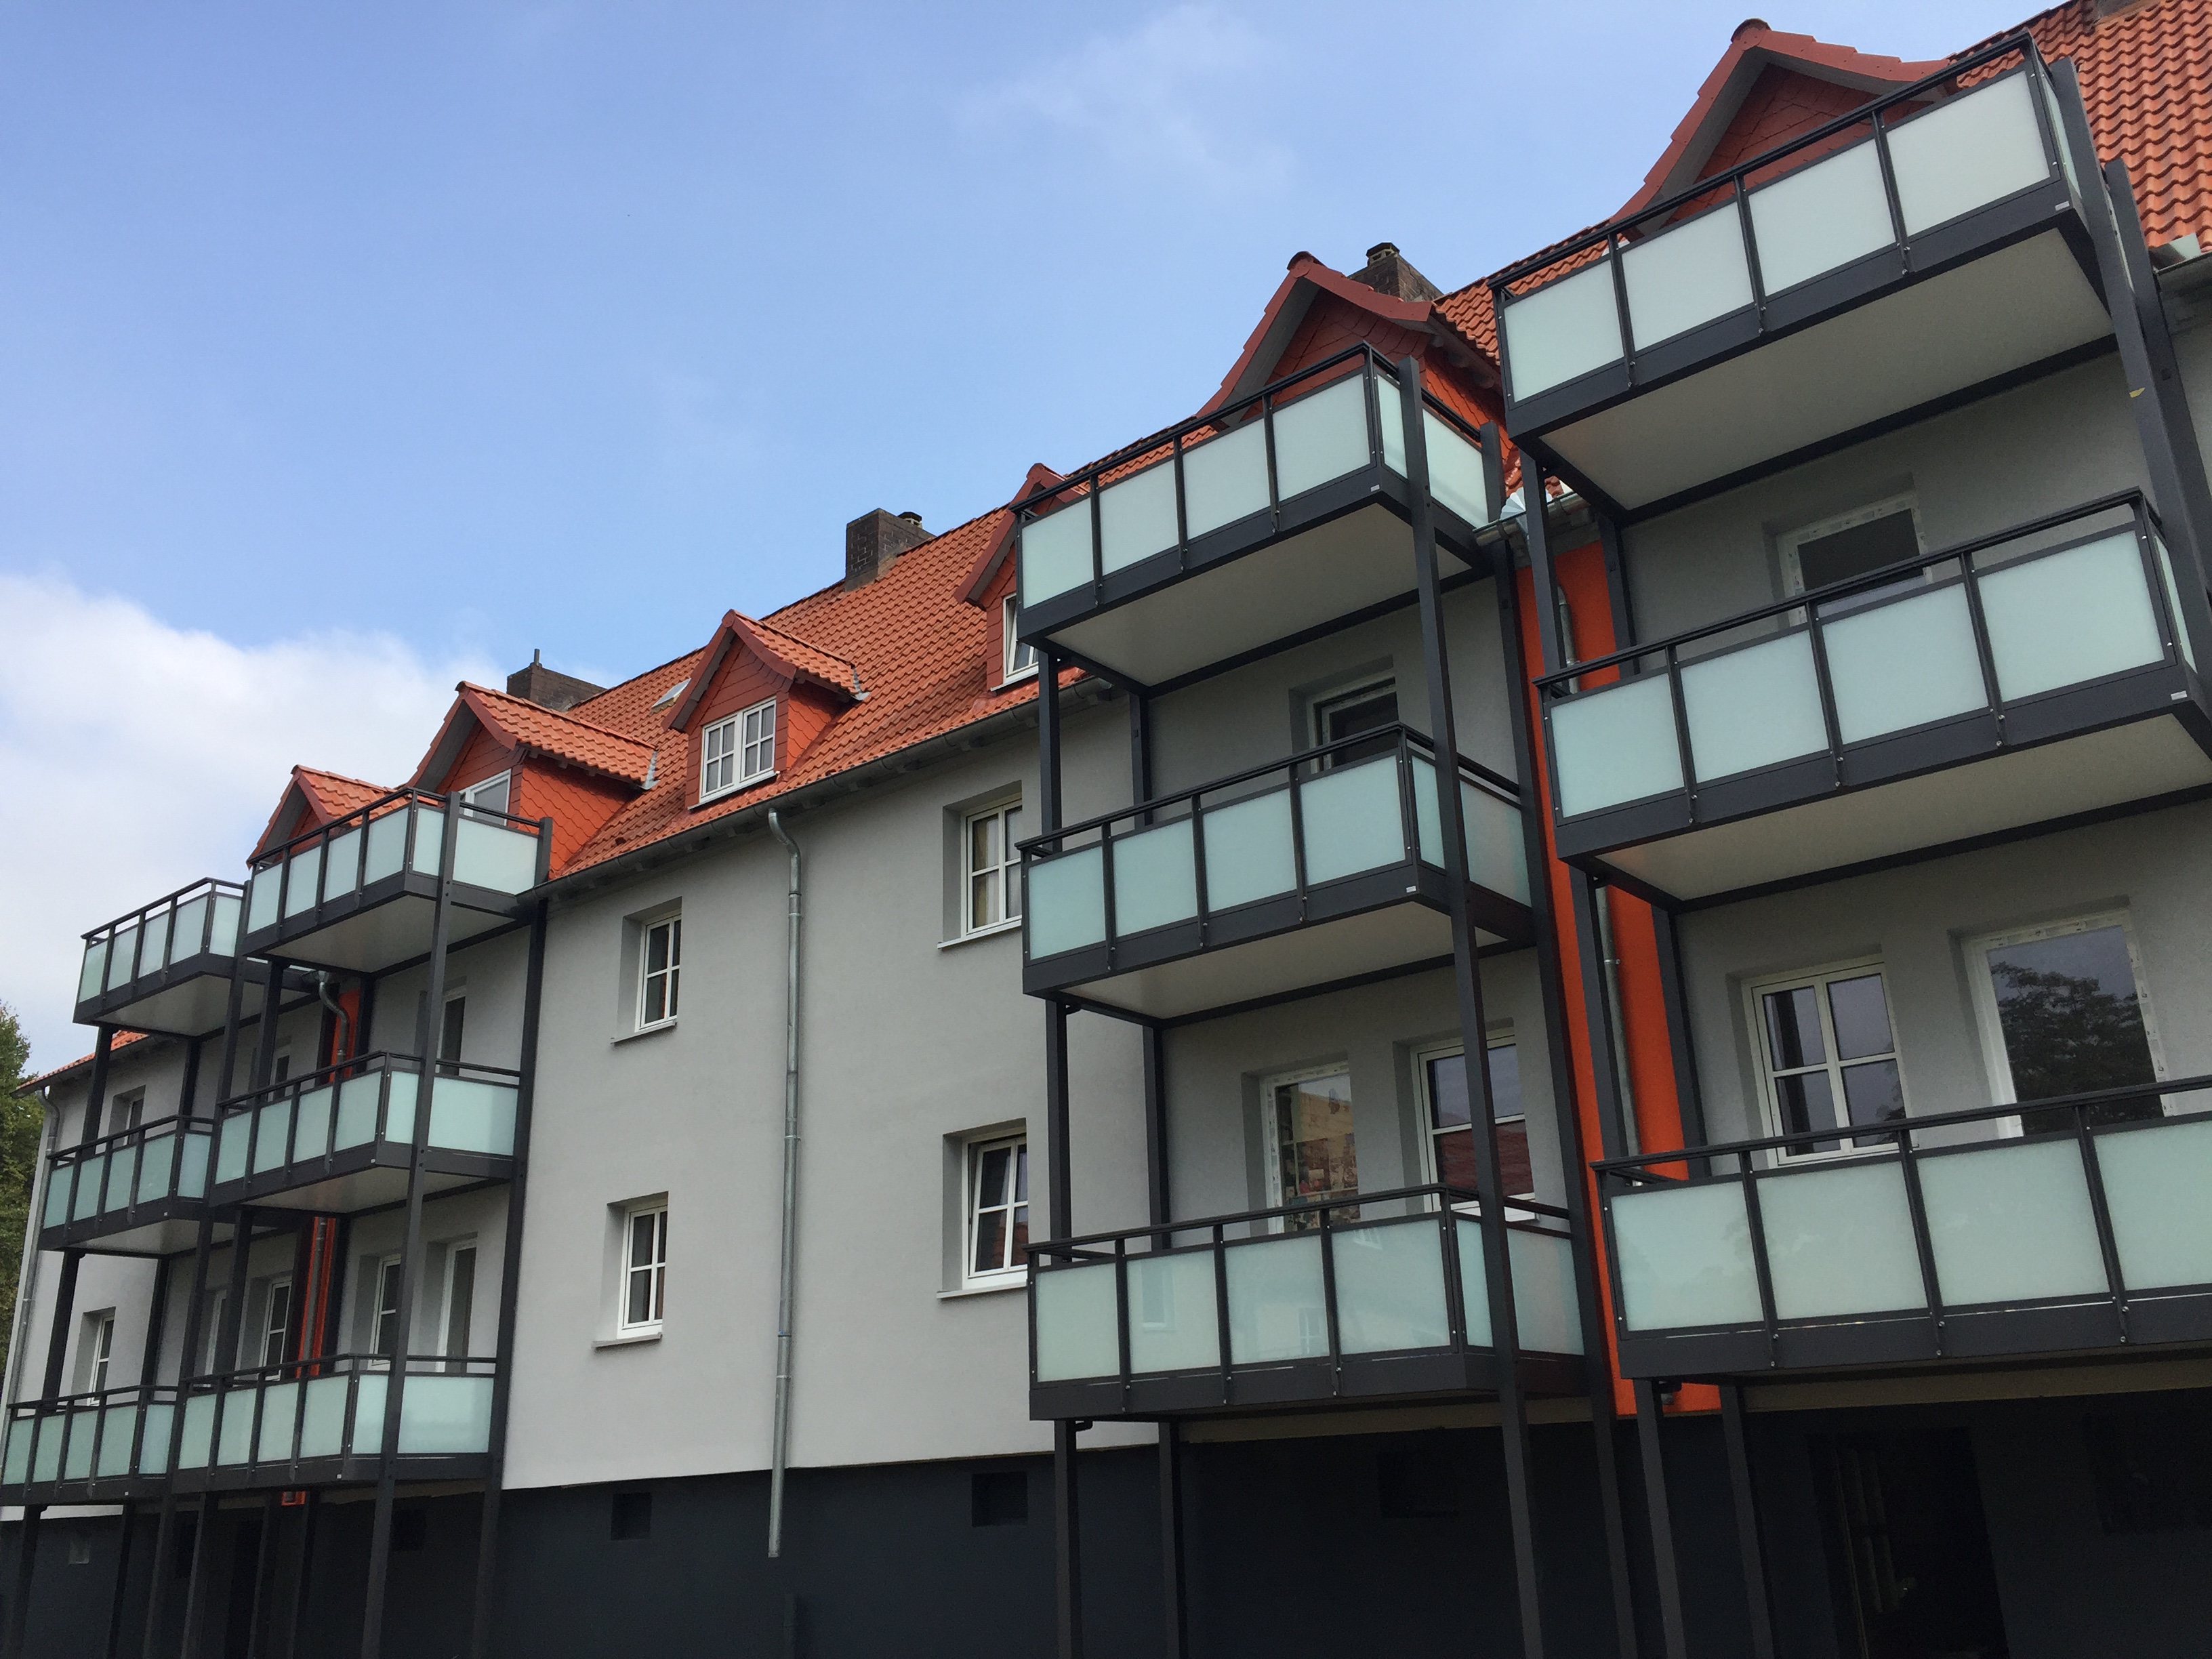 Schöne zwei Zimmer Wohnung in Werra-Meißner-Kreis, Wanfried (Modernisiert 2017)